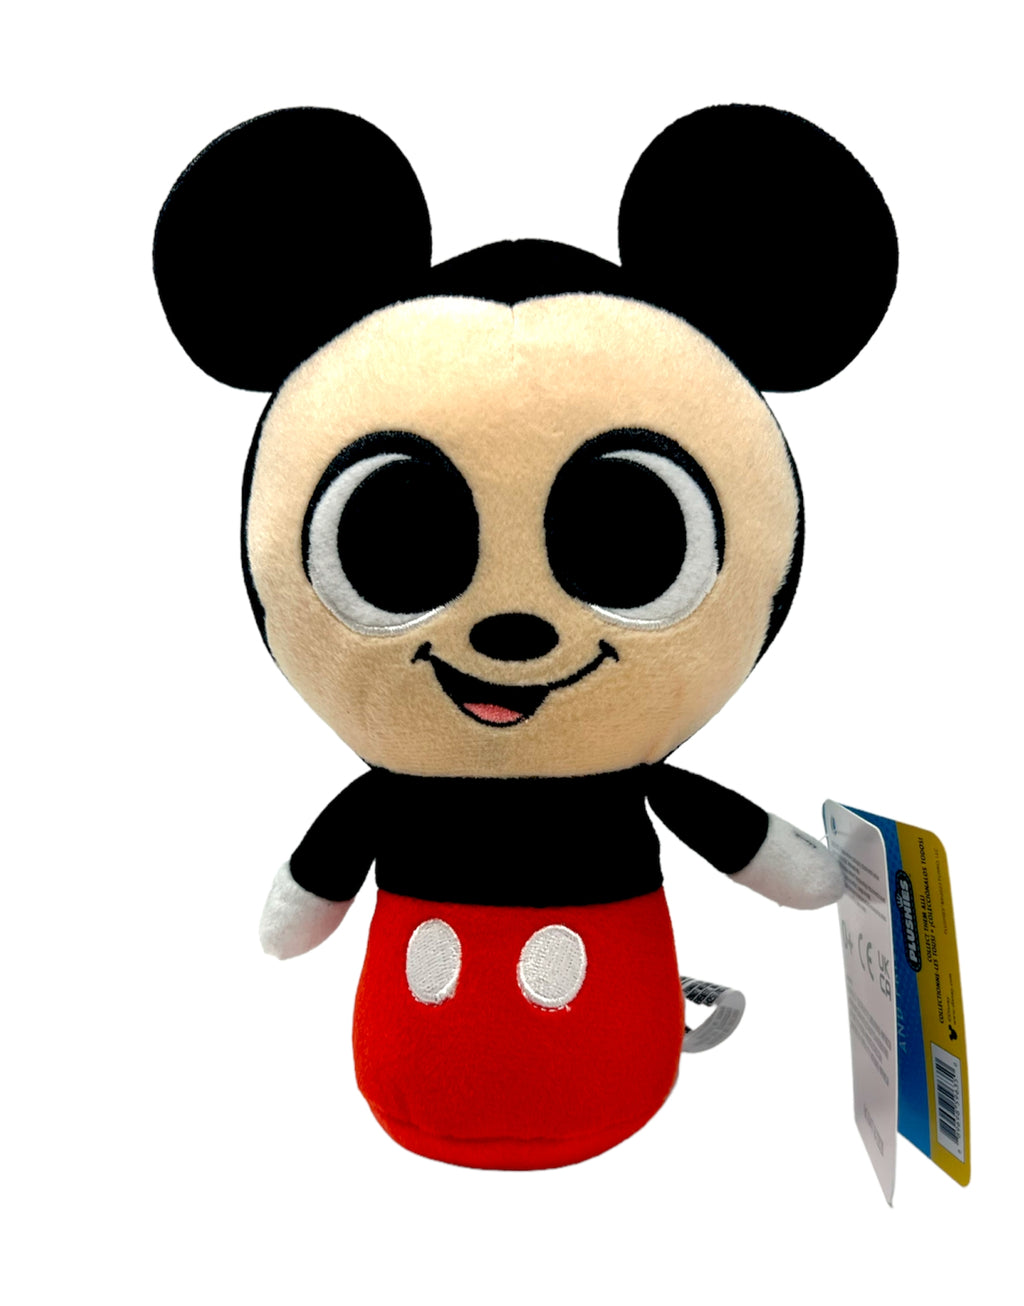 Disney 8 Mickey Mouse Phunny Plush